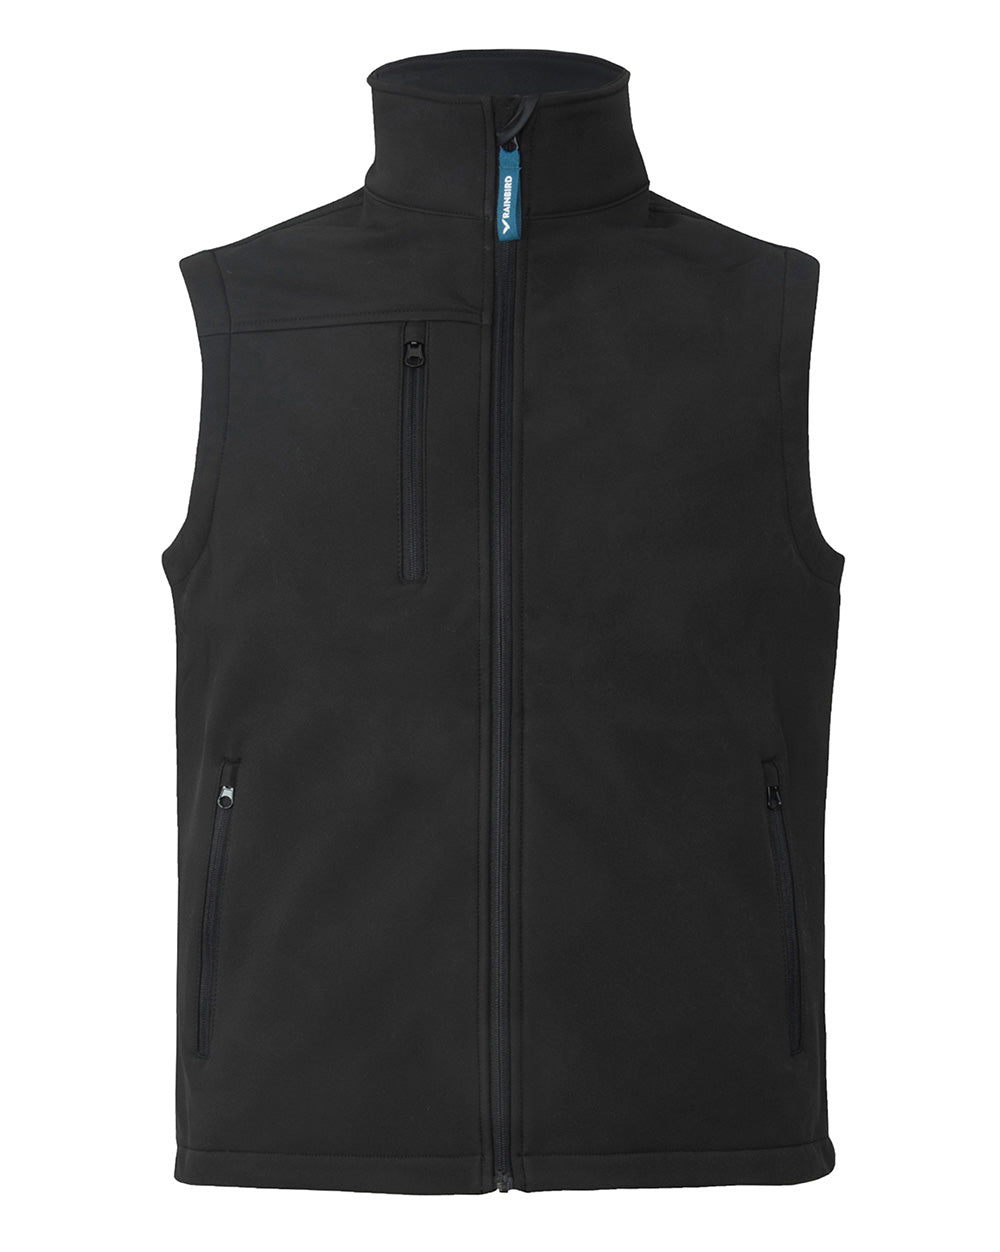 Bevan Softshell Vest in Black